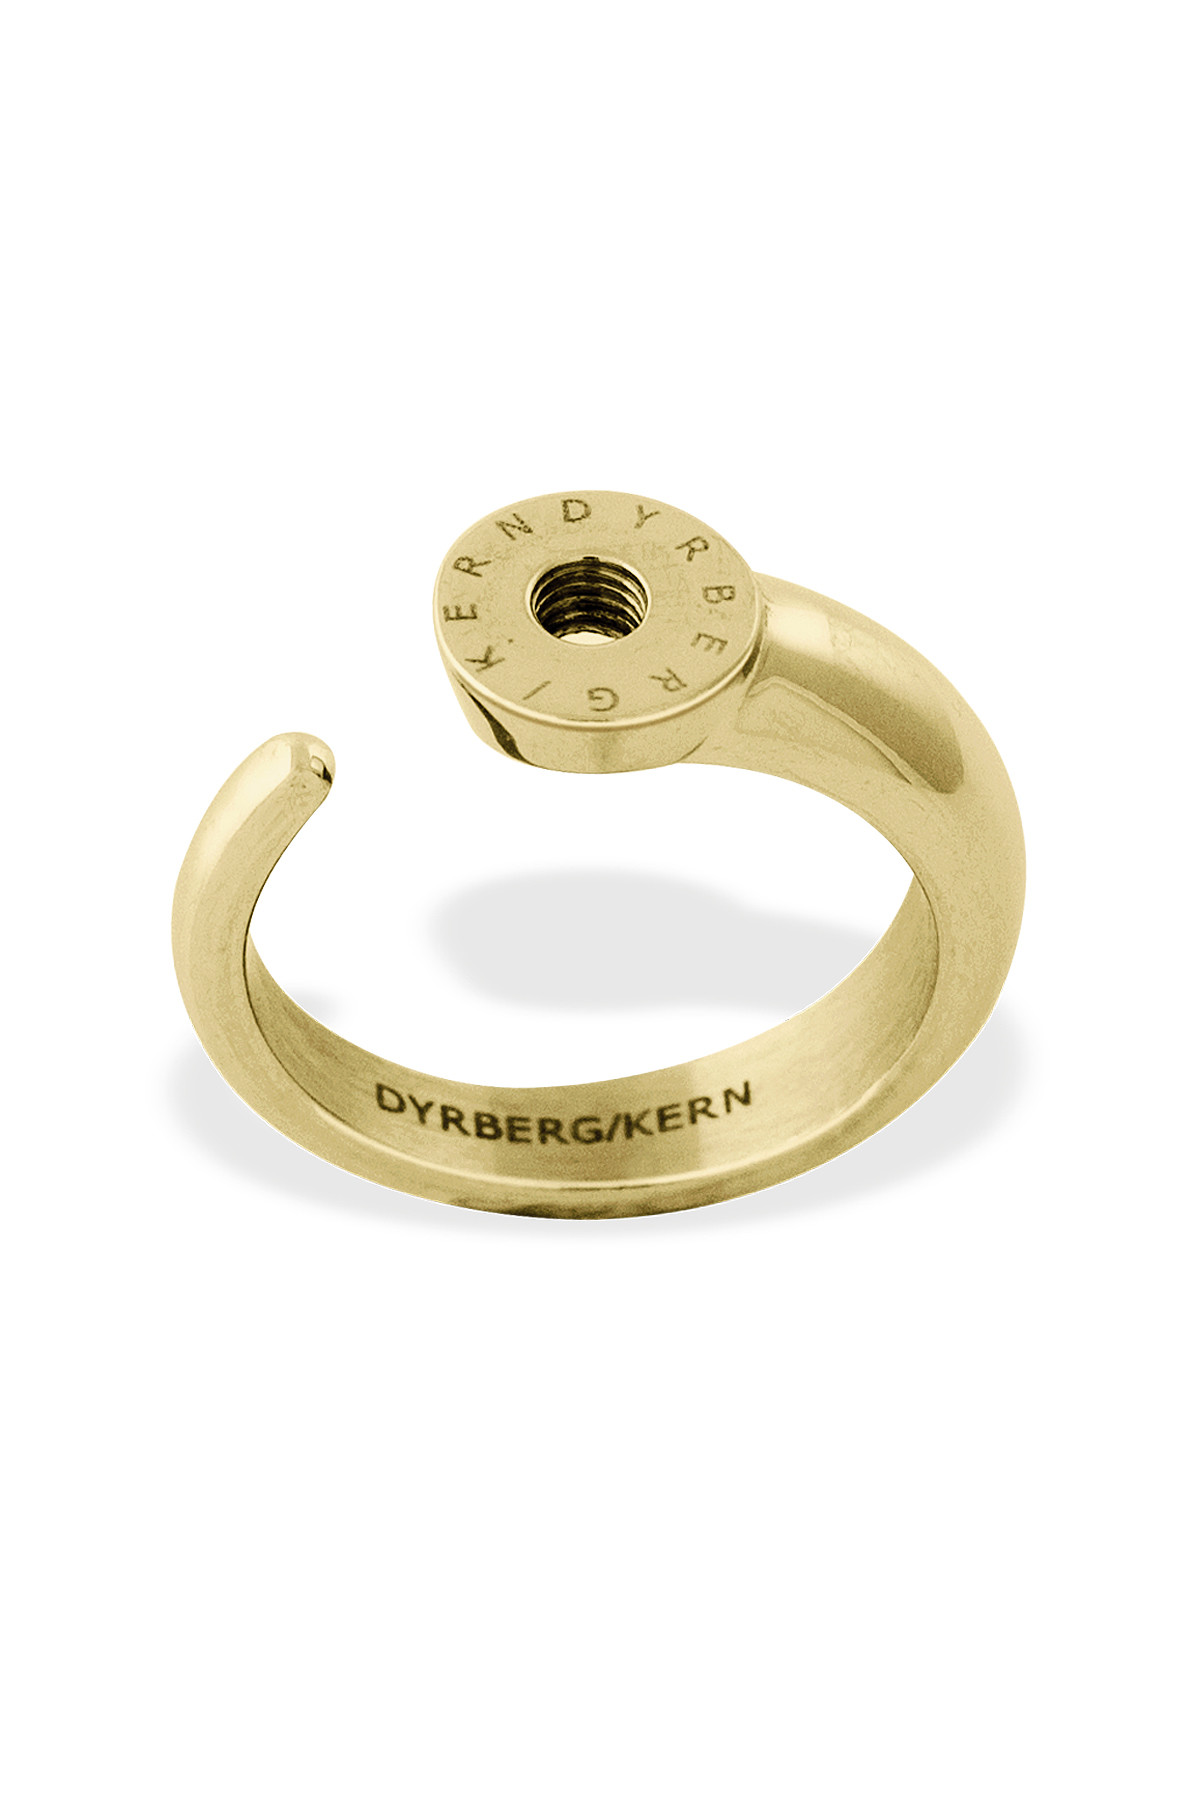 Billede af Dyrberg/kern Ring Ring, Farve: Guld, Størrelse: 0/48, Dame